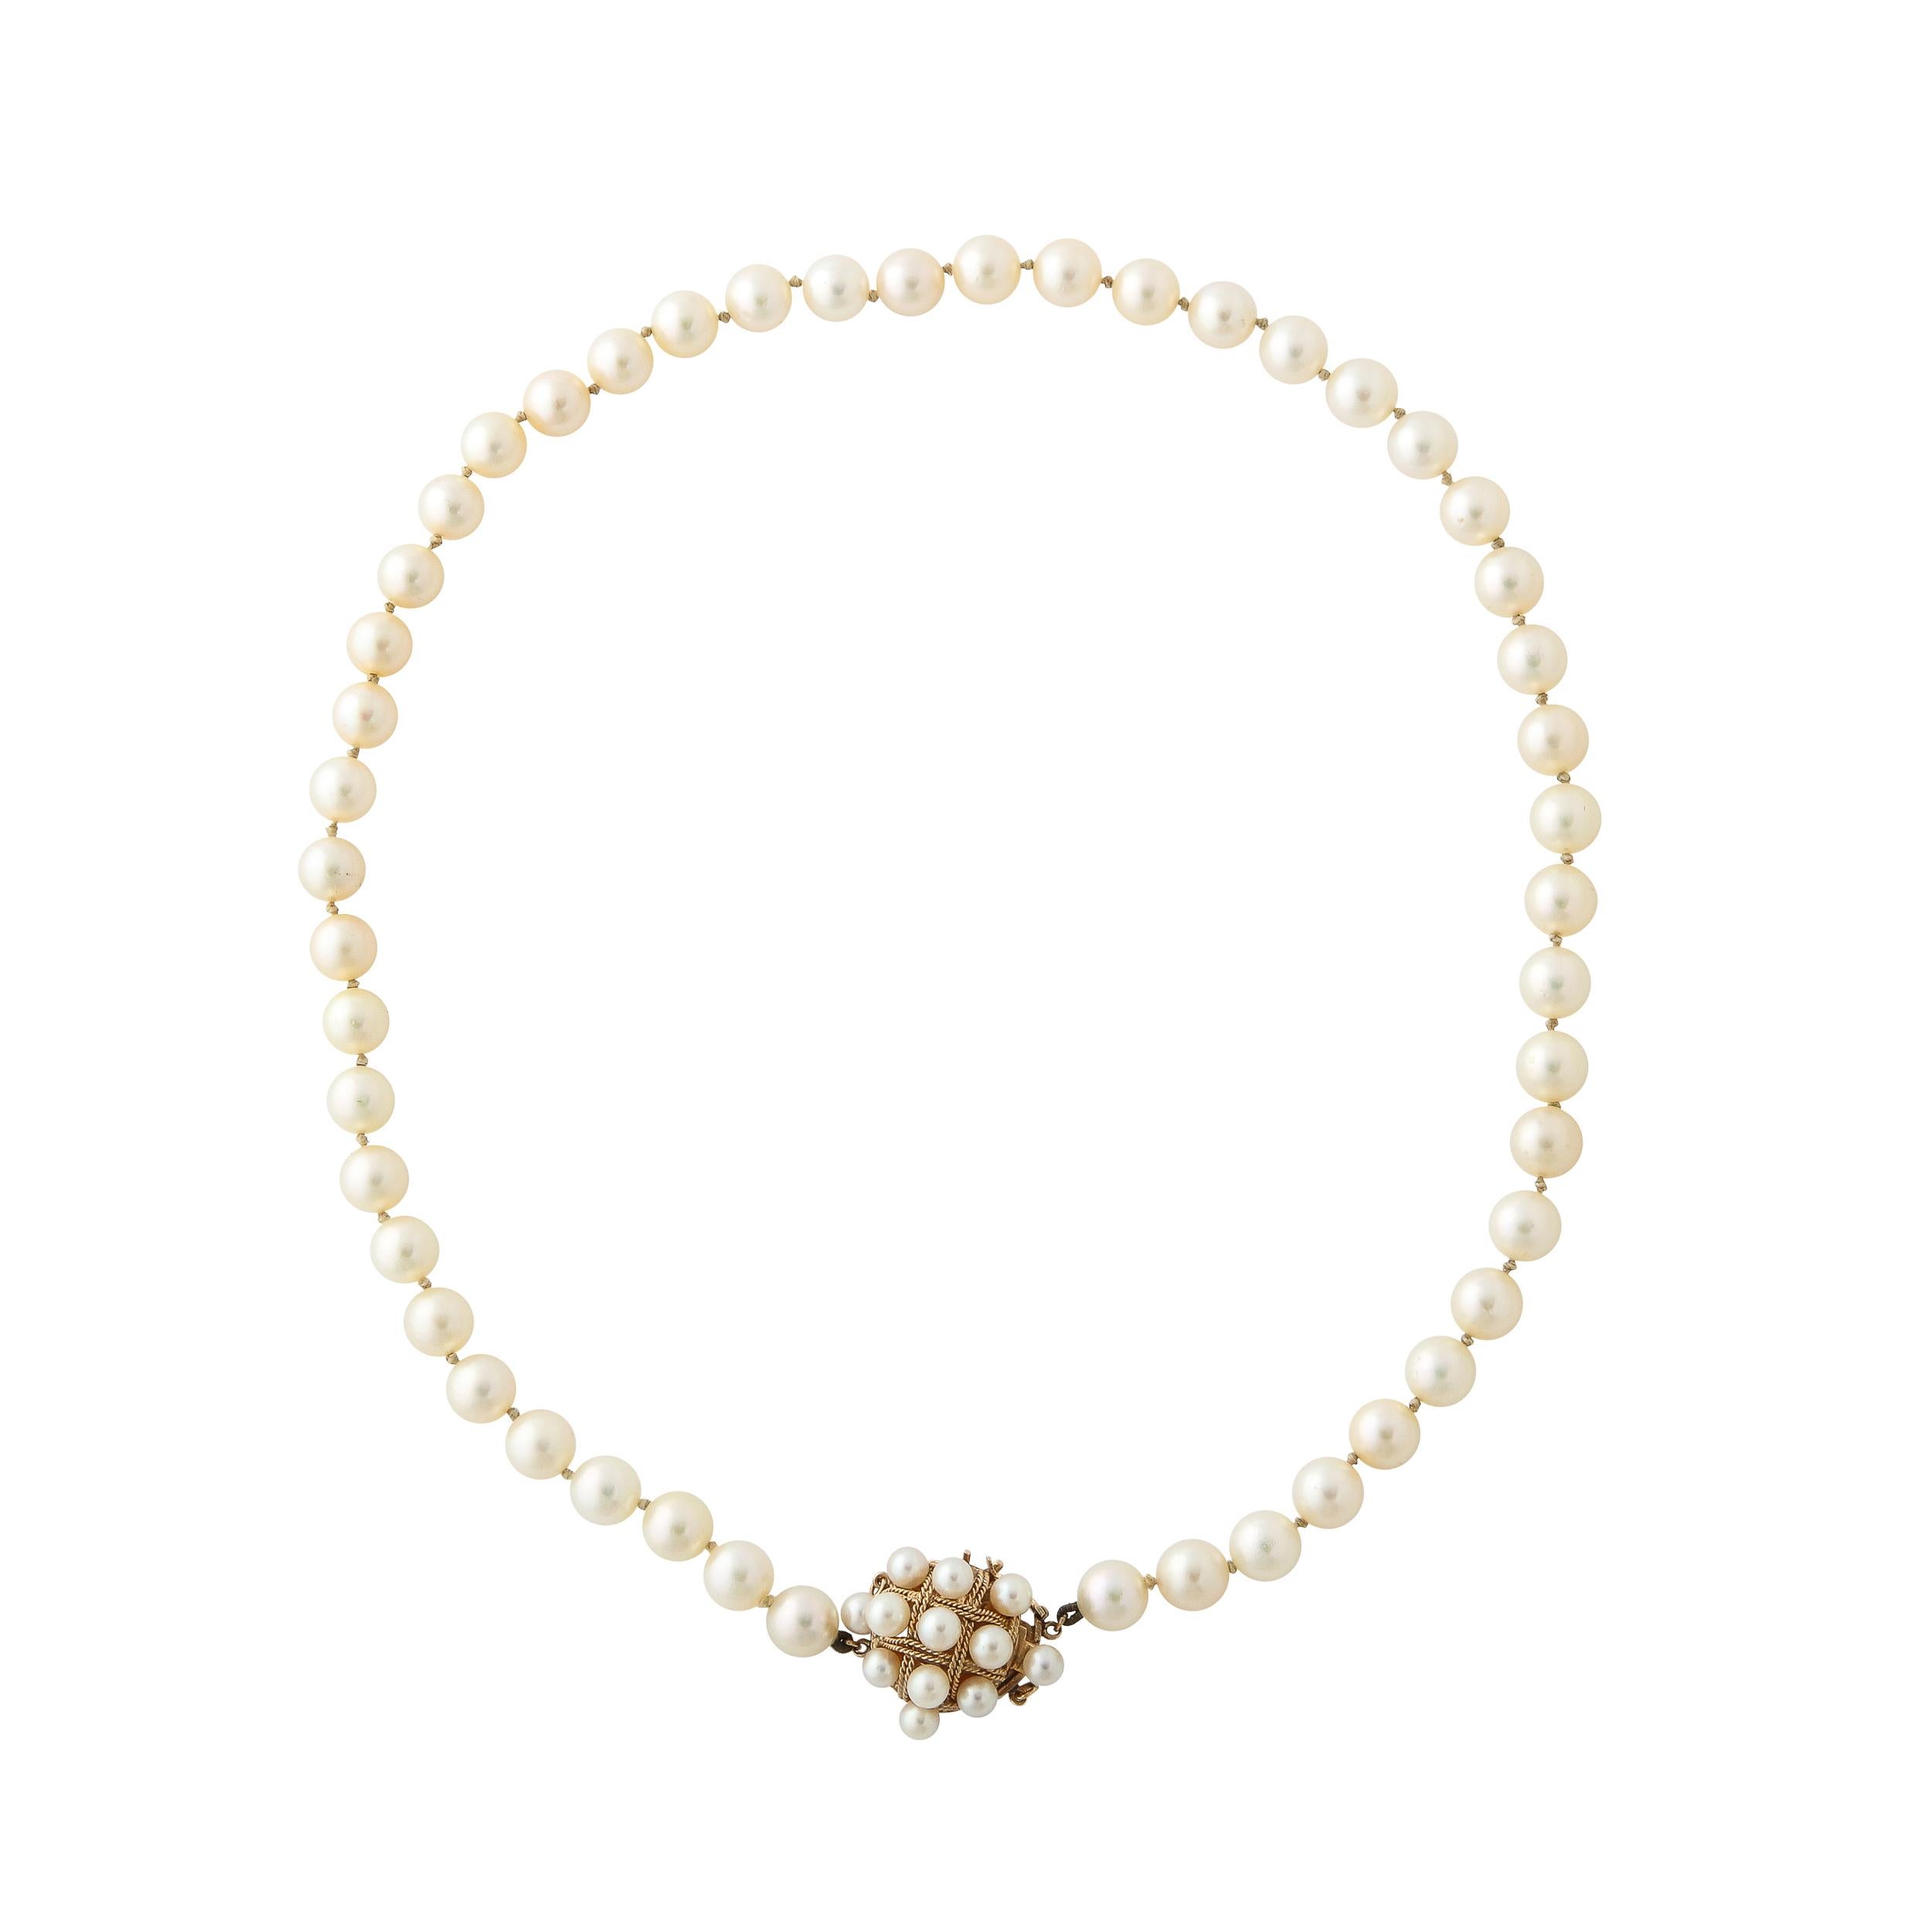 Le collier moderniste du milieu du siècle comporte 49 perles de 6 mm et un fermoir avec un motif de corde tressée 14k torsadée en forme de hachure transversale et est serti de 11 perles plus petites.  On peut le porter avec le fermoir à l'avant ou à